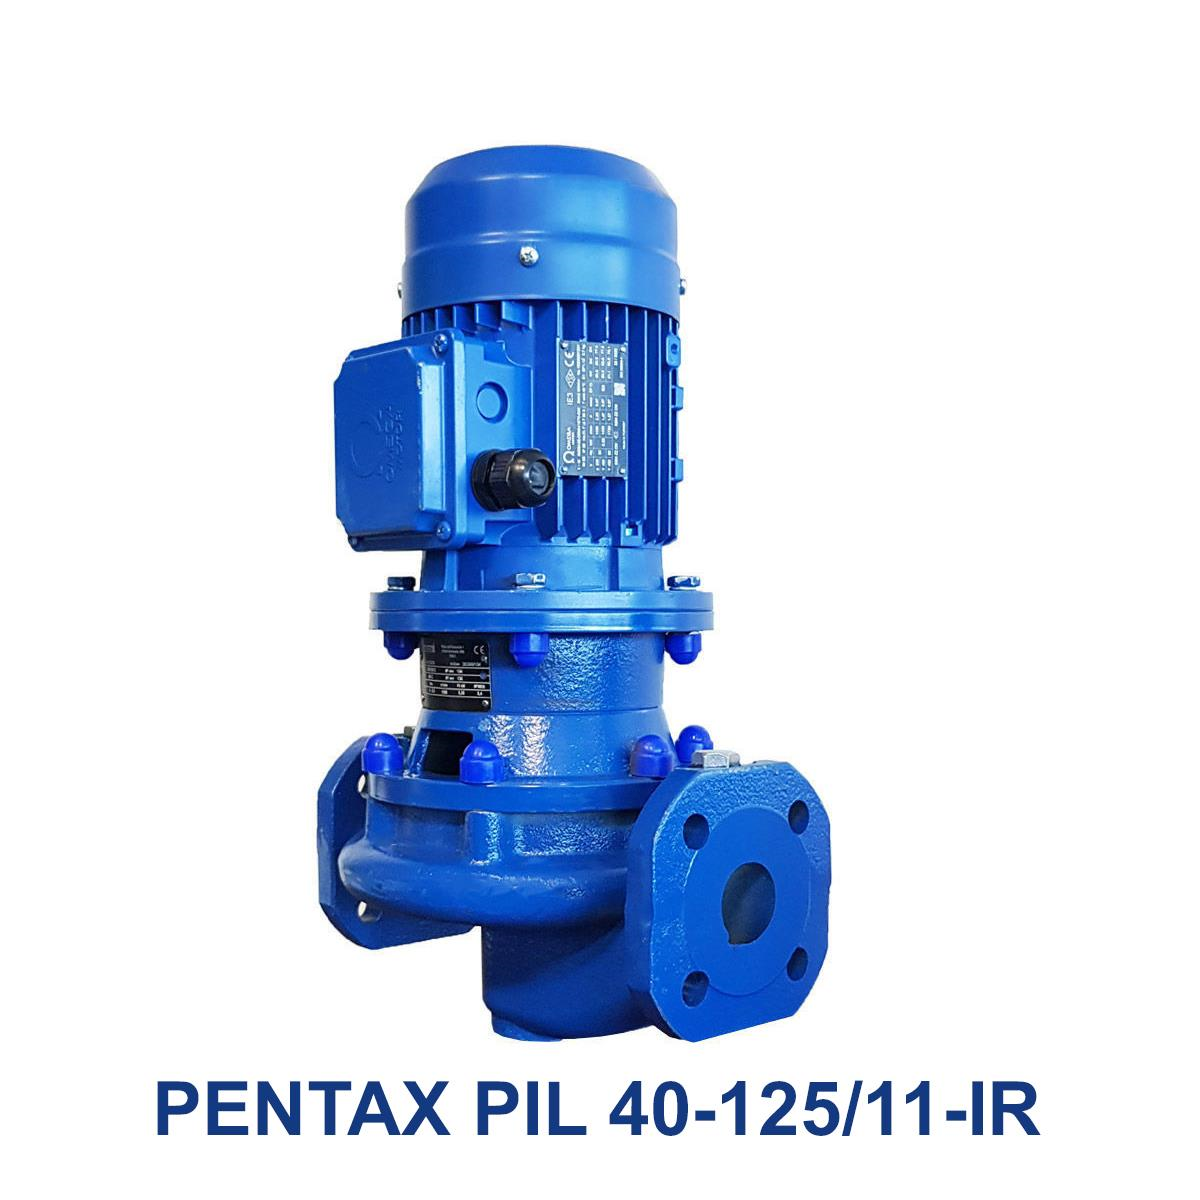 PENTAX-PIL-40-125-11-IR